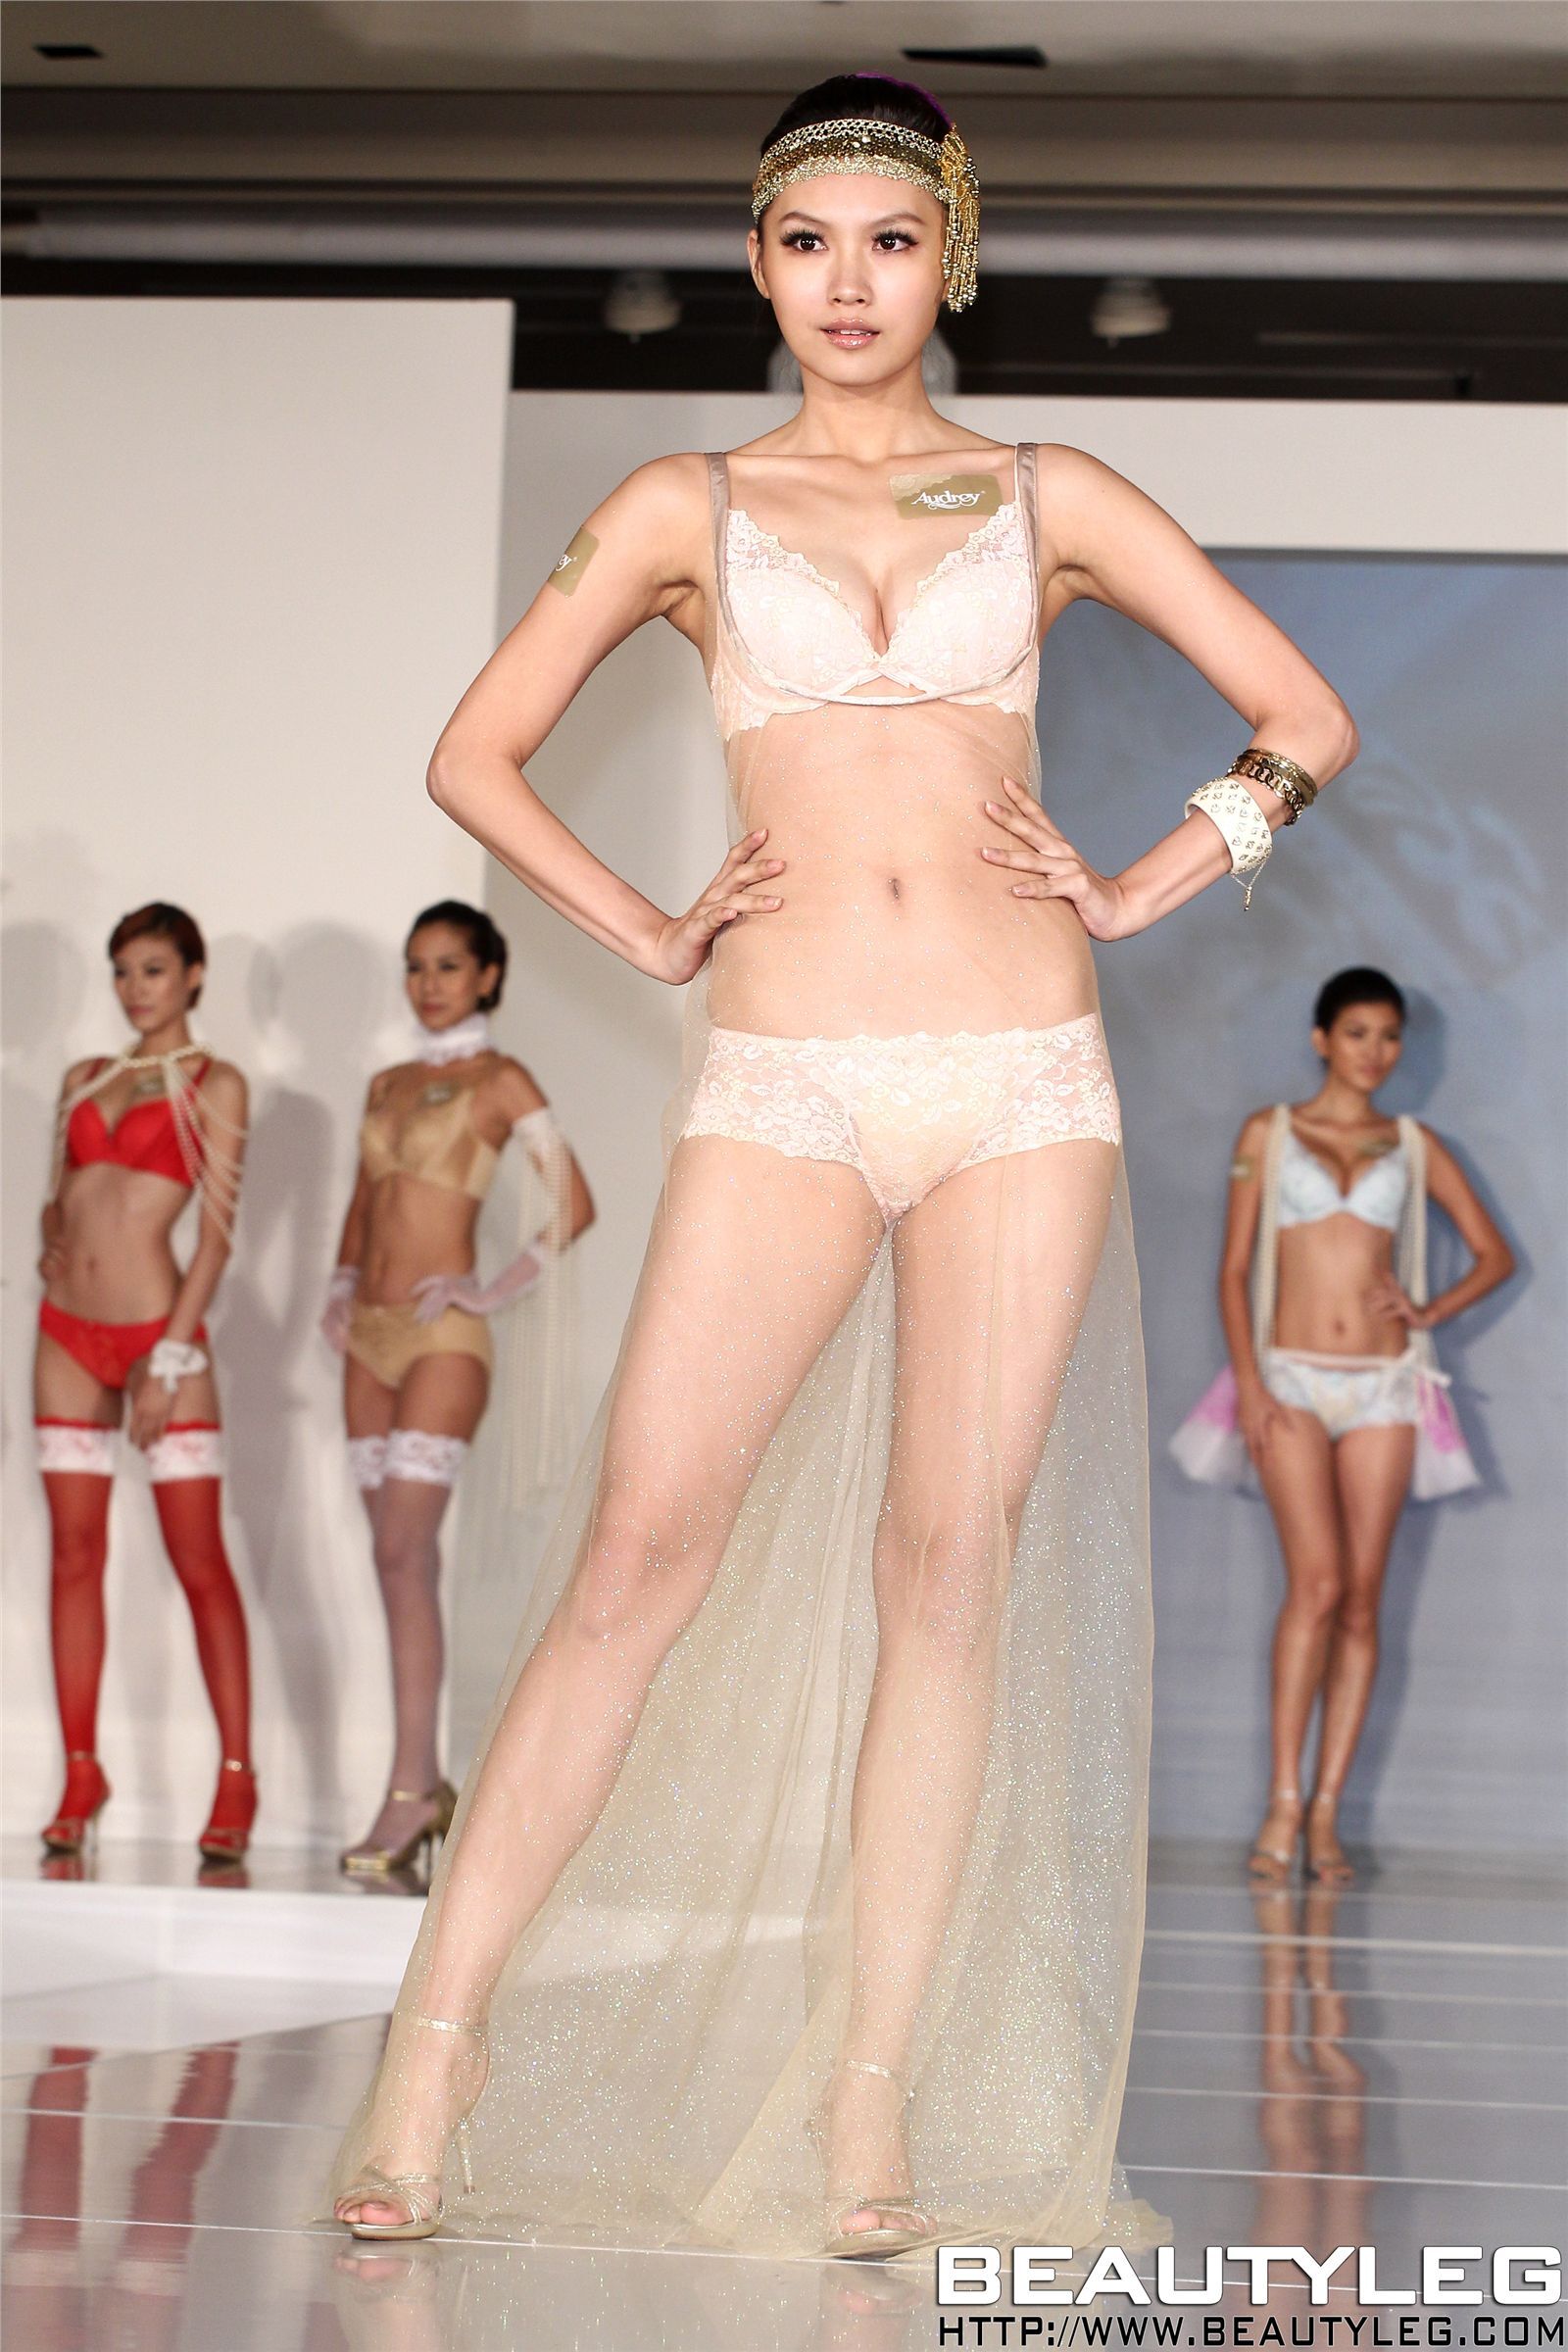 Beautyleg美腿模特20111014 新闻图发布 BEAUTY NEWS UPDATE(3)